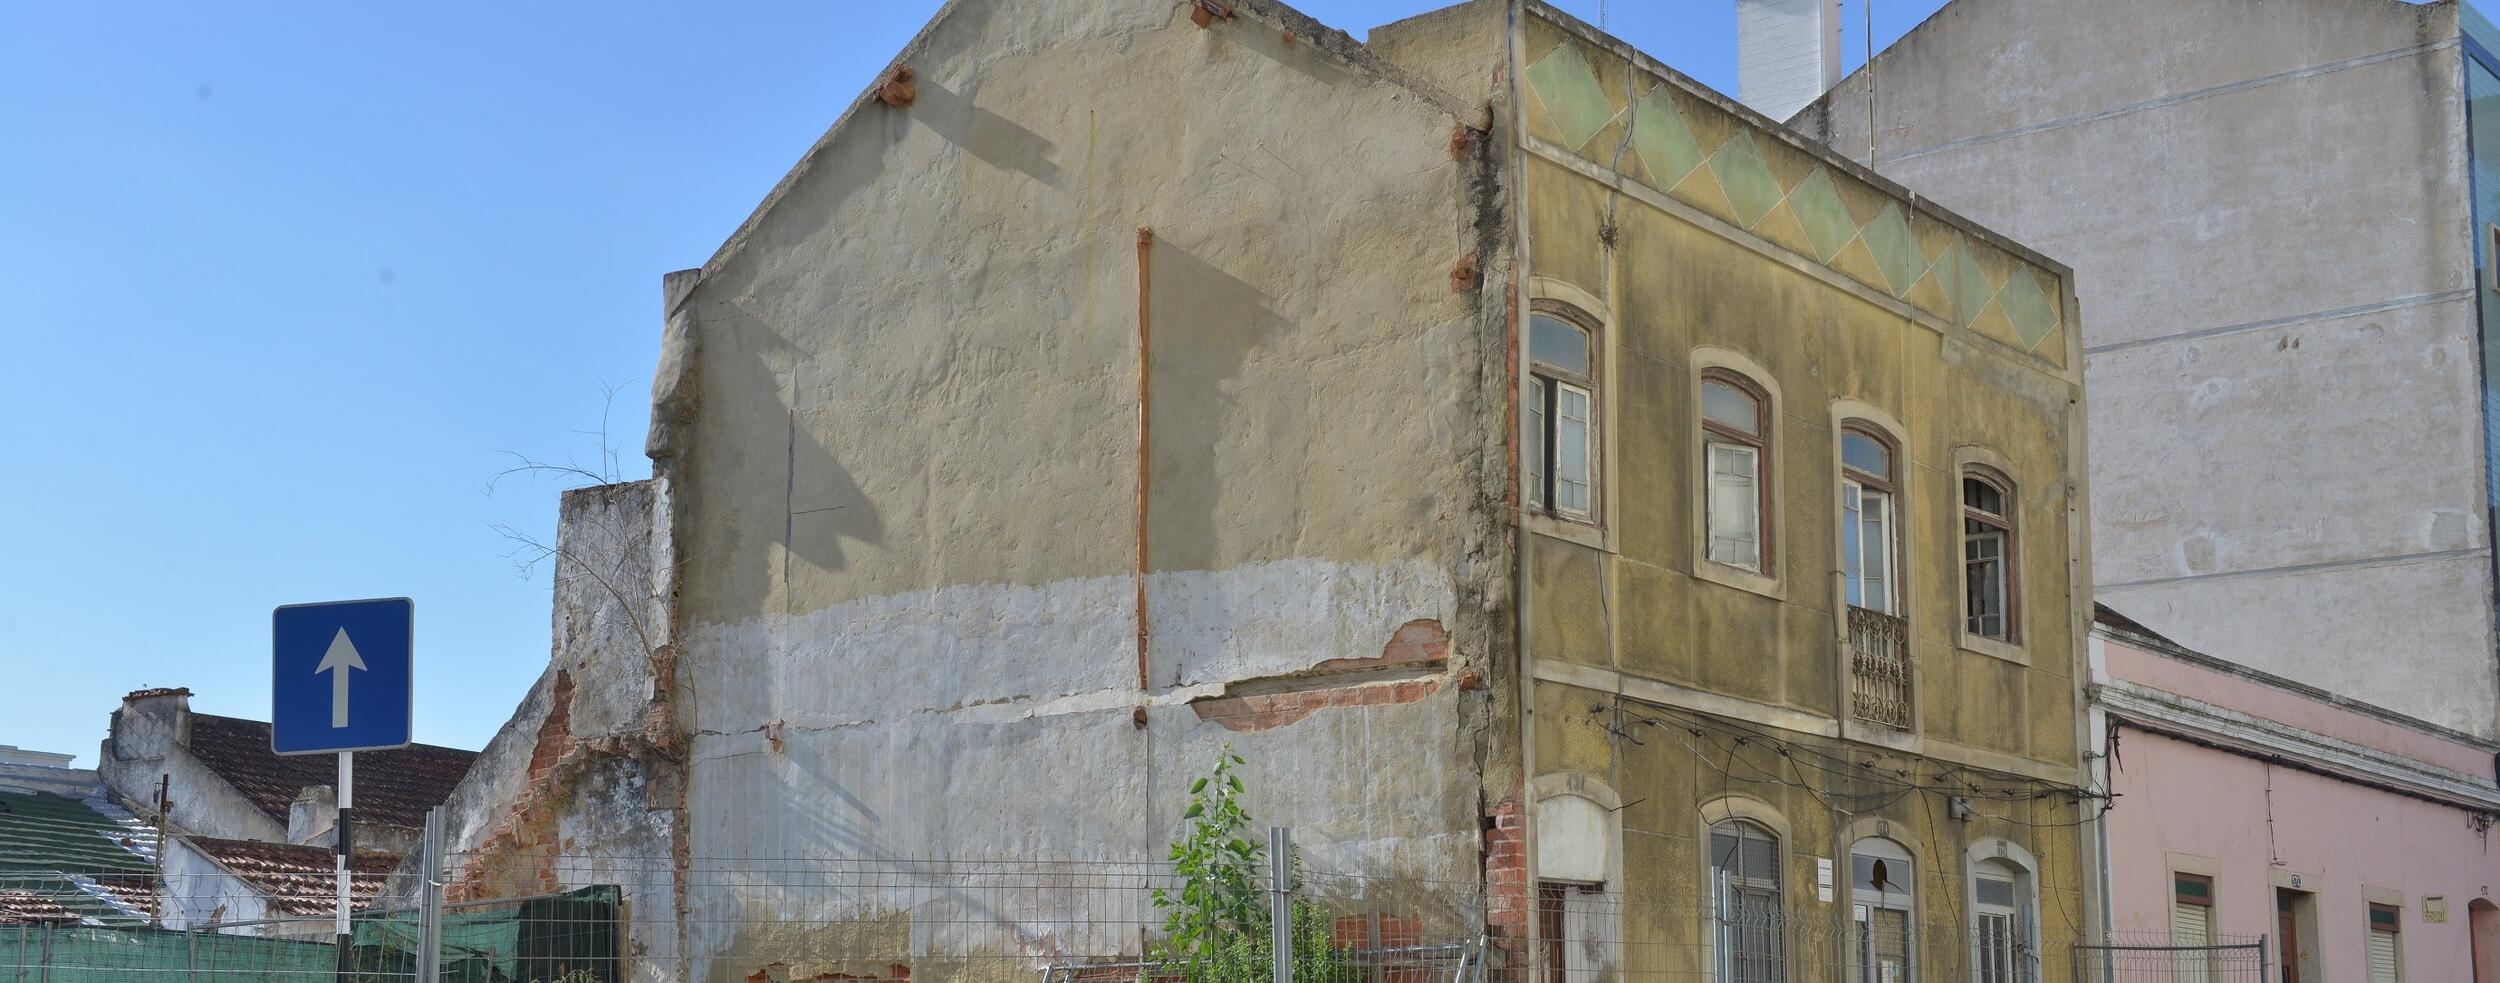 Consignada demolição do edifício em ruína na Rua José Joaquim Marques